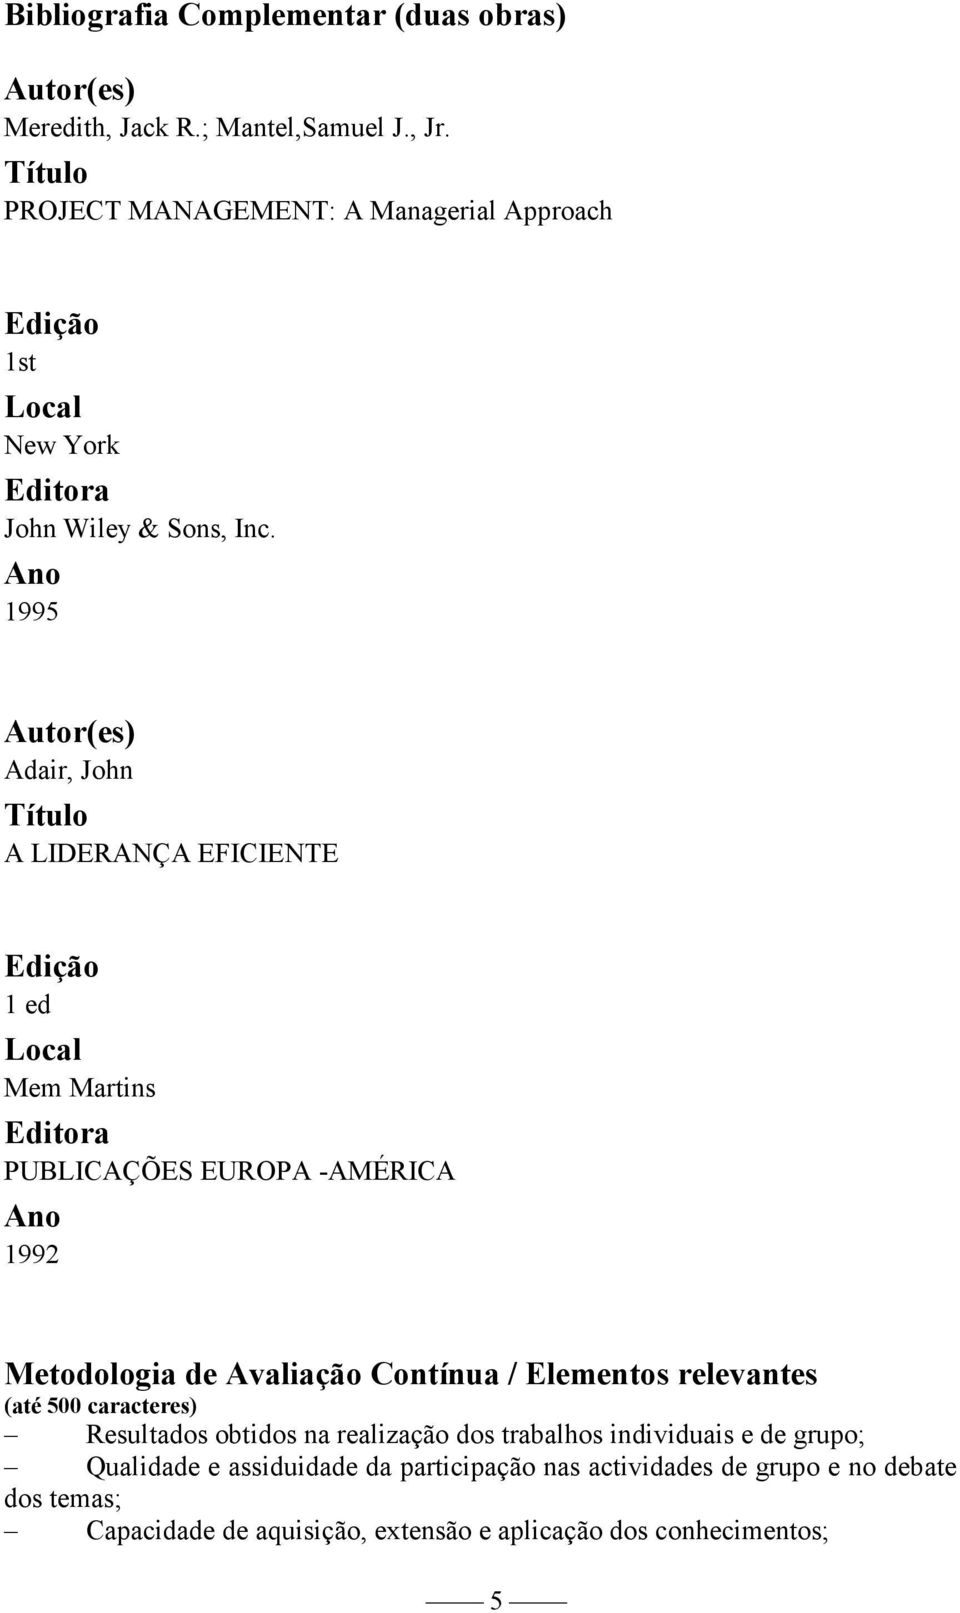 1995 Autor(es) Adair, John A LIDERANÇA EFICIENTE 1 ed Mem Martins PUBLICAÇÕES EUROPA -AMÉRICA 1992 Metodologia de Avaliação Contínua /